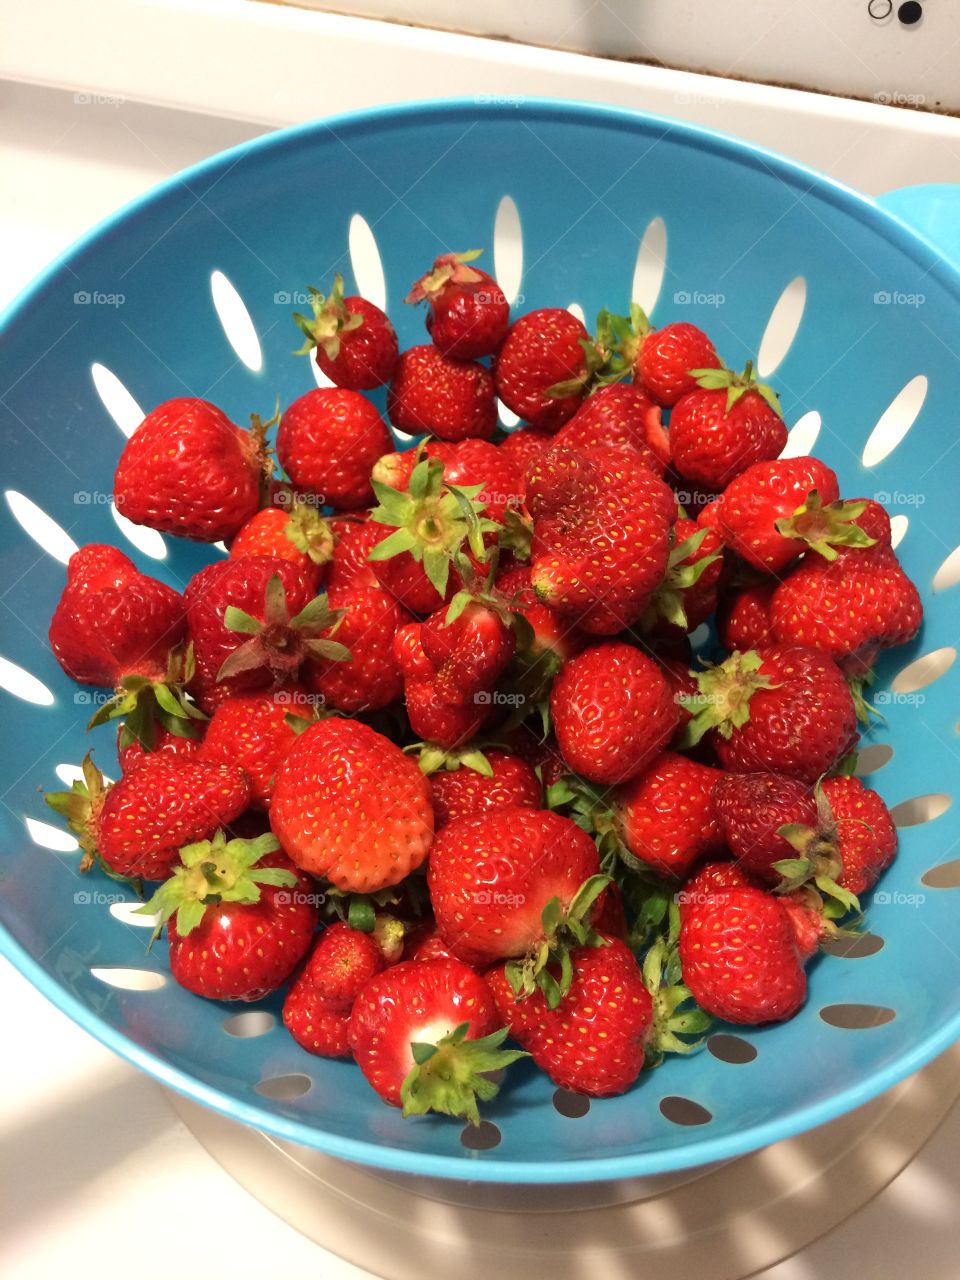 Strawberries grown at home taste best